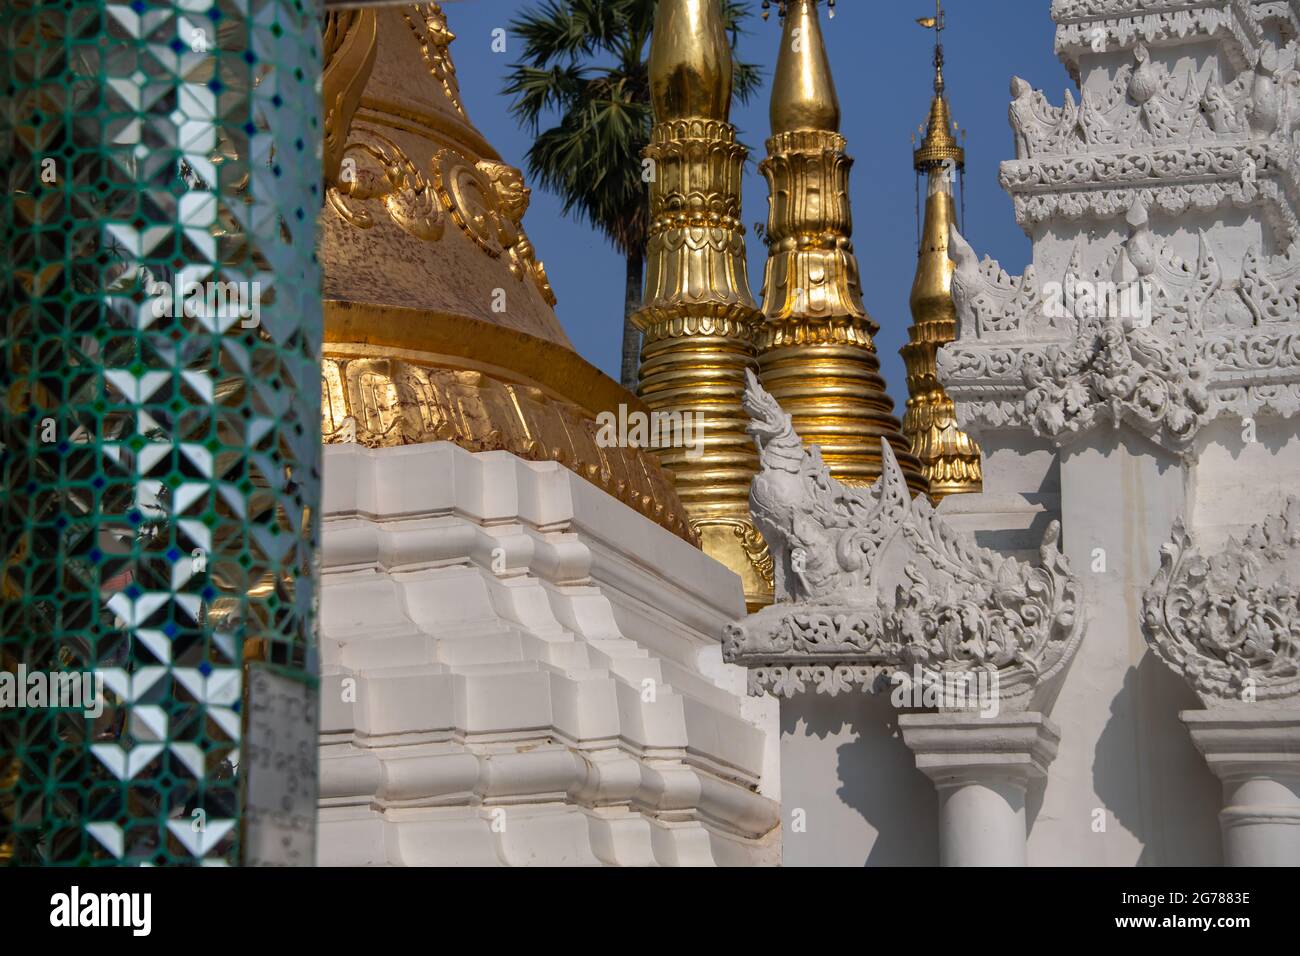 Pagode Shwedagon, Yangon, Myanmar. Vue partielle sur le complexe du temple richement décoré, revêtu de carreaux de miroir et d'une assiette dorée. Banque D'Images